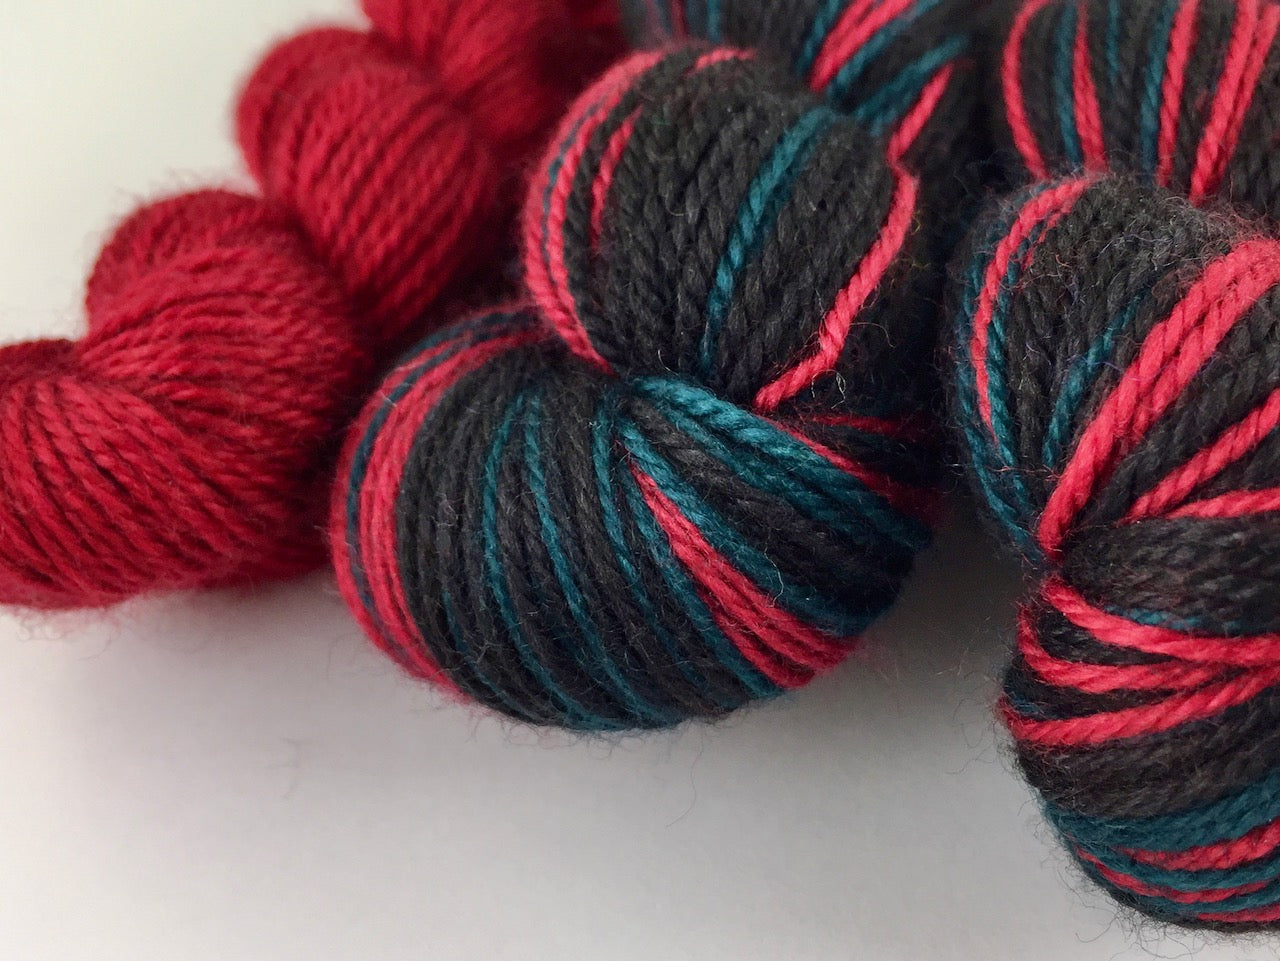 Baah humbug self-striping sock yarn